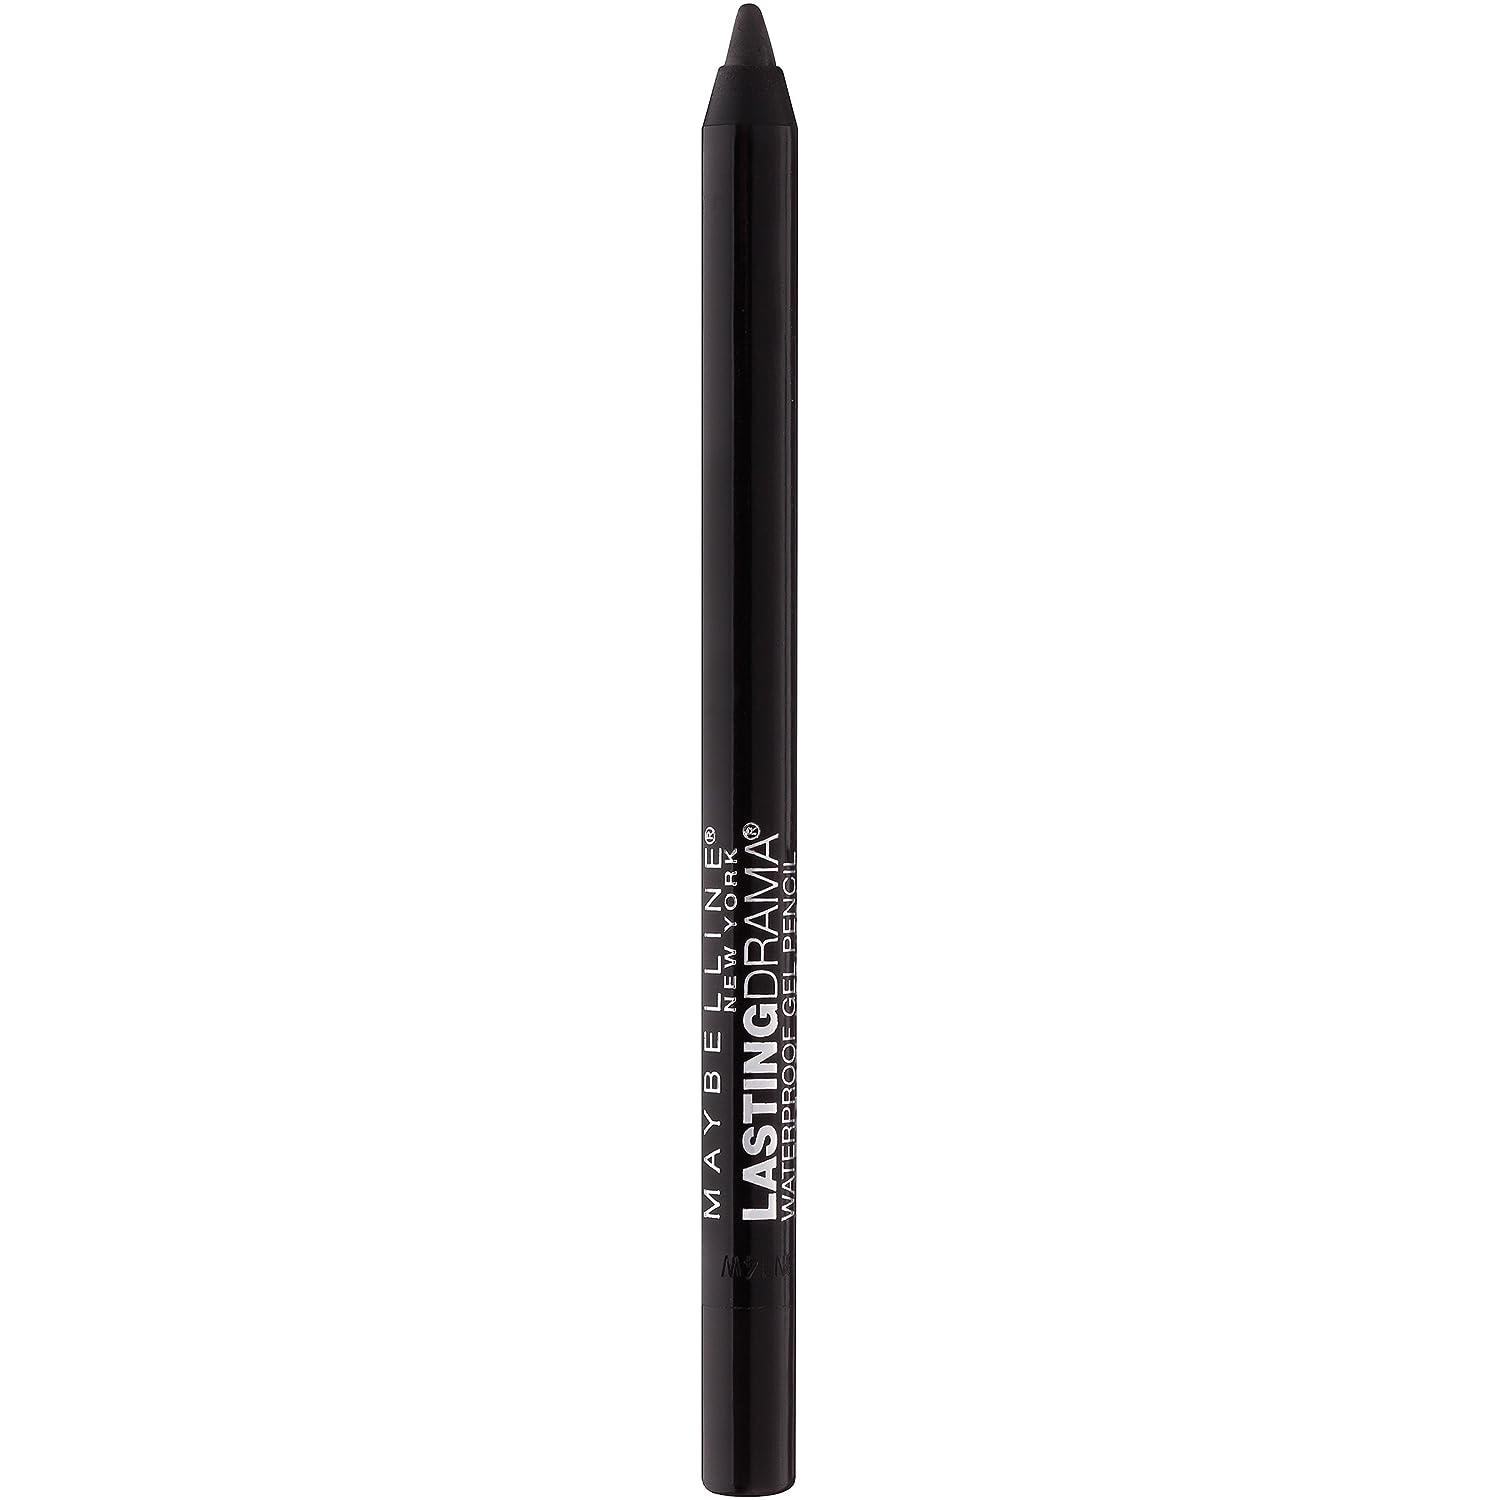 Maybelline New York Eyestudio Lasting Drama Waterproof Matte Gel Pencil Black Eyeliner Makeup, Sleek Onyx, 1 Count